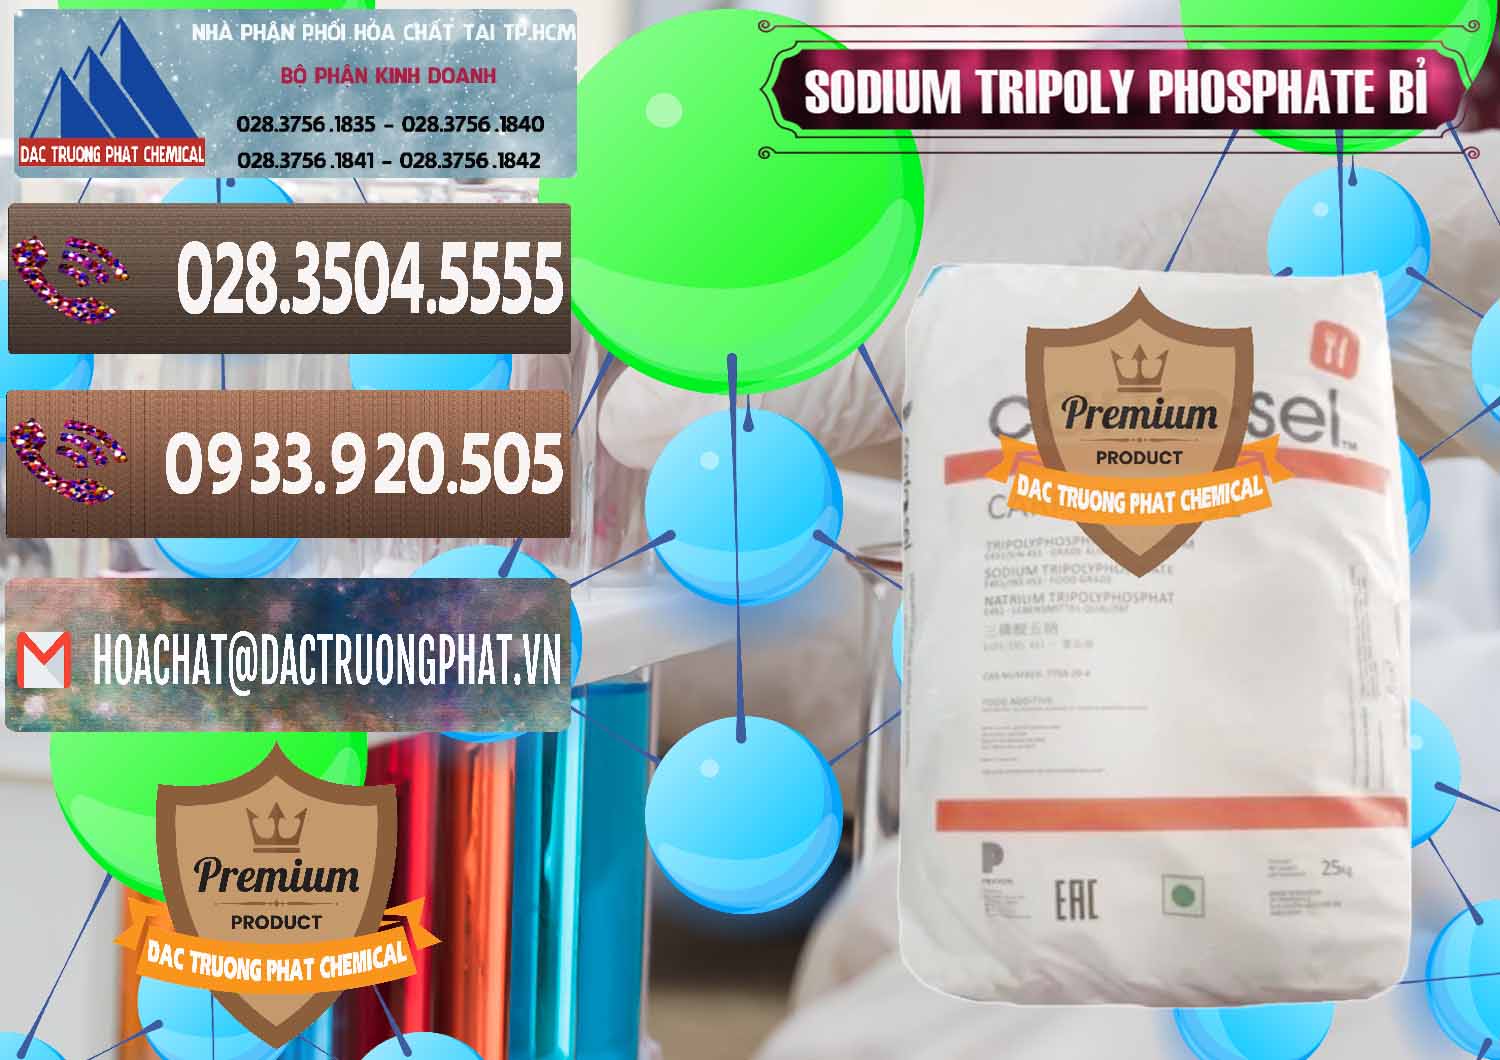 Nơi bán - cung ứng Sodium Tripoly Phosphate - STPP Carfosel 991 Bỉ Belgium - 0429 - Đơn vị chuyên cung cấp & kinh doanh hóa chất tại TP.HCM - hoachatviet.net